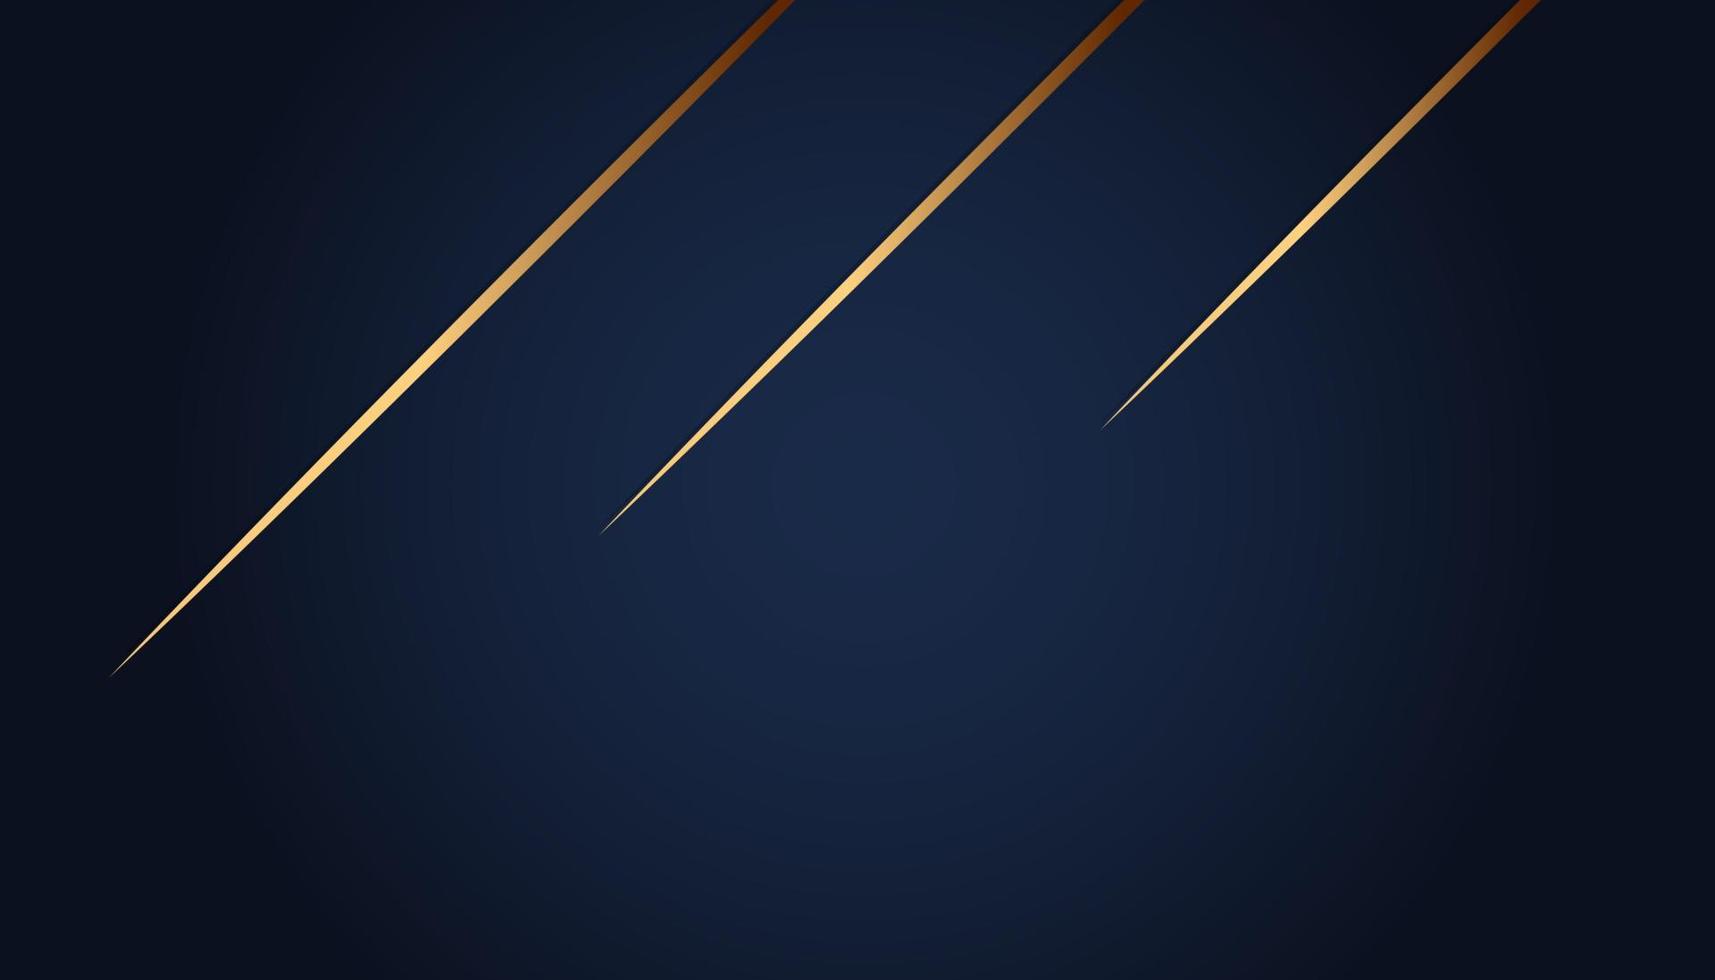 moderne luxe abstracte achtergrond met gouden lijnelementen gloeiend patroon. elegante kromme geometrische vormen op donkerblauwe achtergrond. vectorillustratie voor ontwerp vector